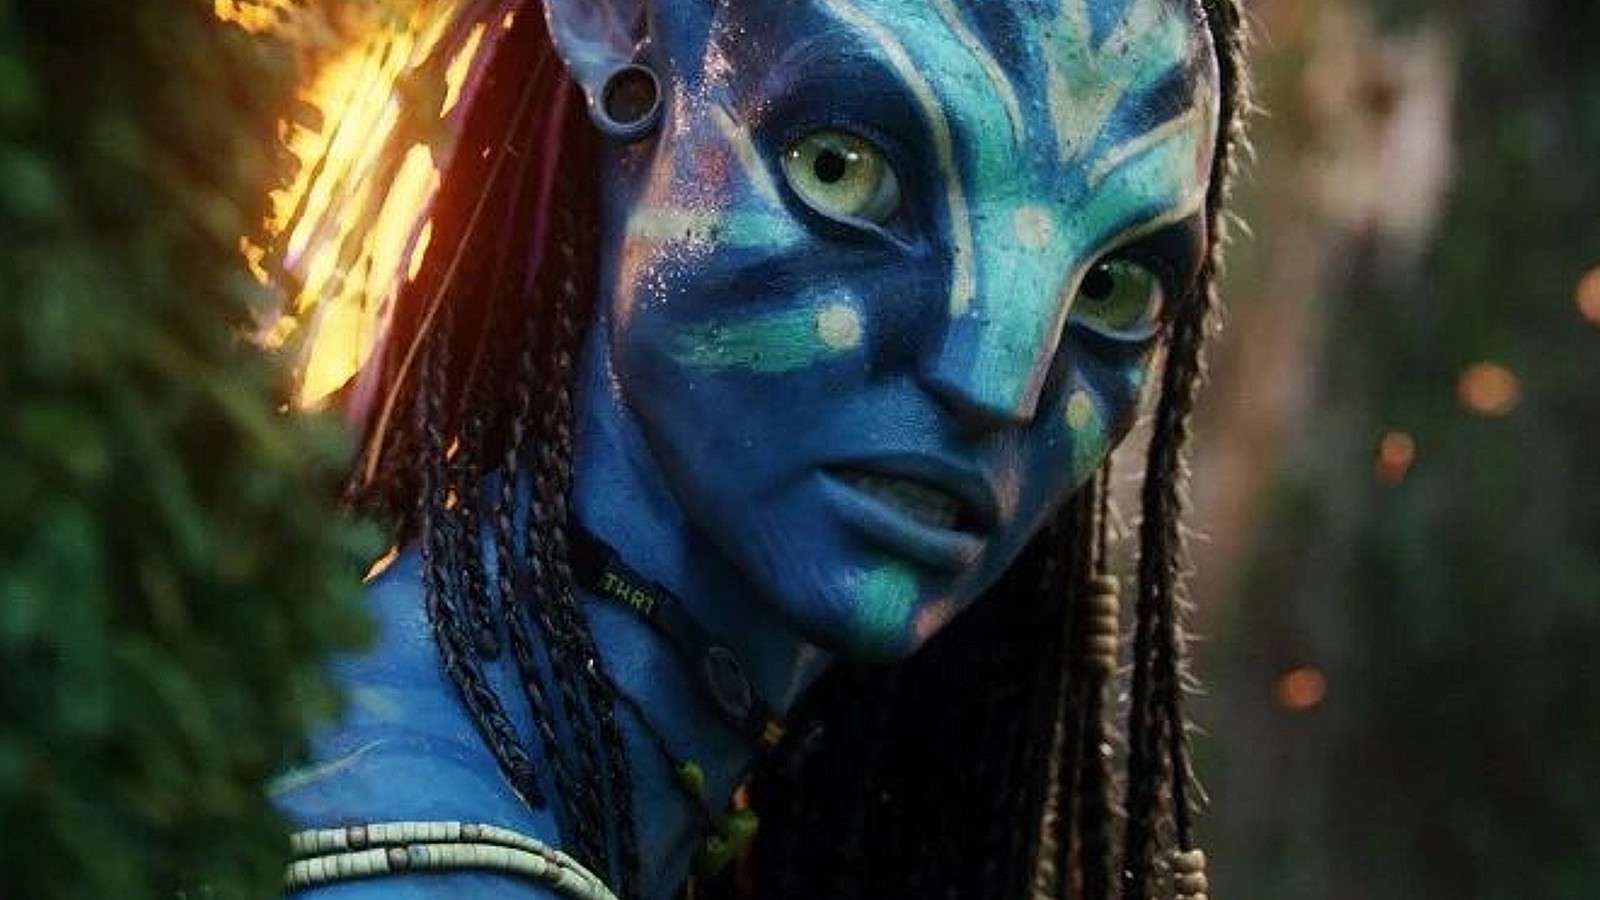 Neytiri in the first Avatar movie